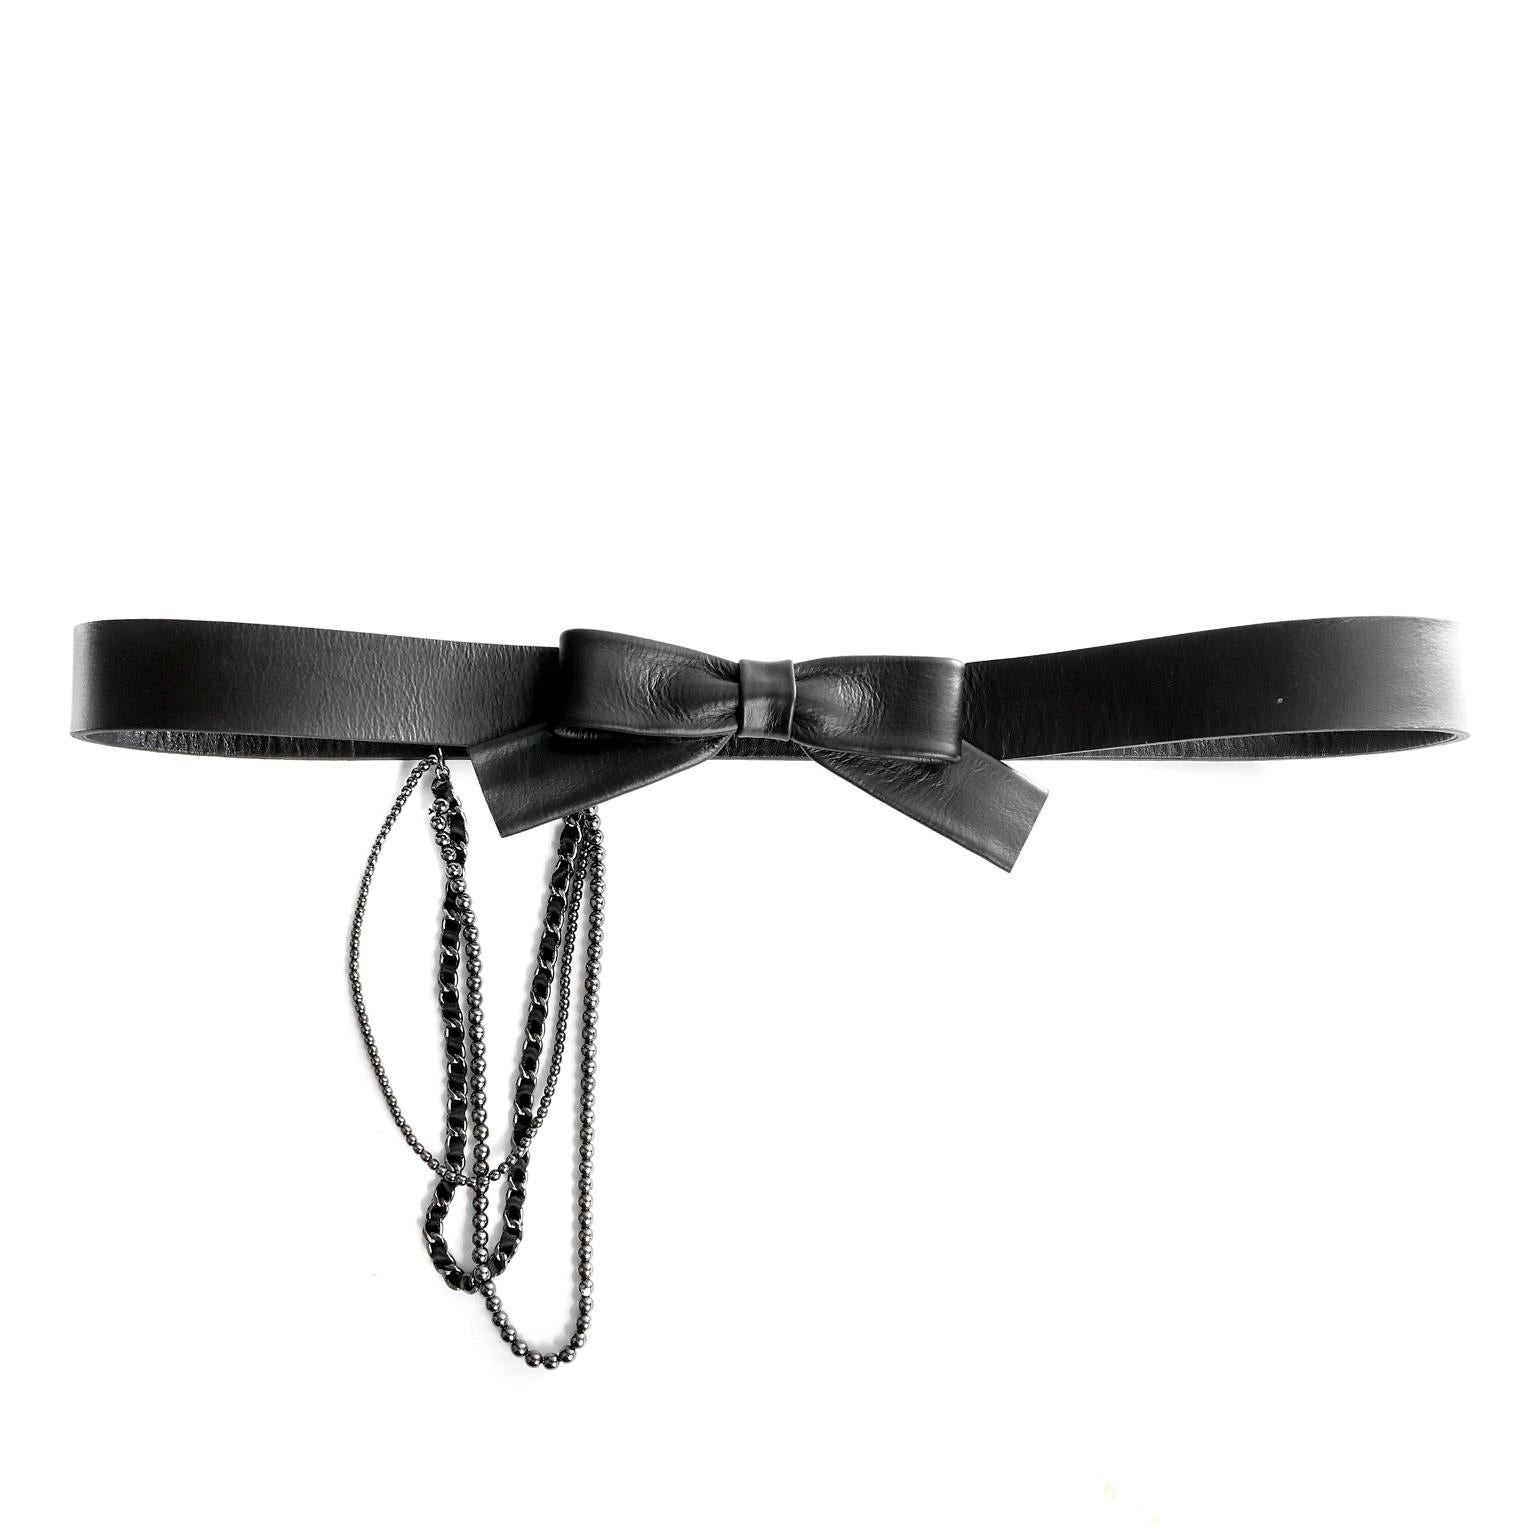 Cette authentique ceinture noire à nœud de Chanel est en parfait état.  La ceinture en cuir noir est recouverte d'un tissu en laine noire et se ferme par un nœud central.  Trois chaînes de styles différents pendent de manière décorative sur le côté.